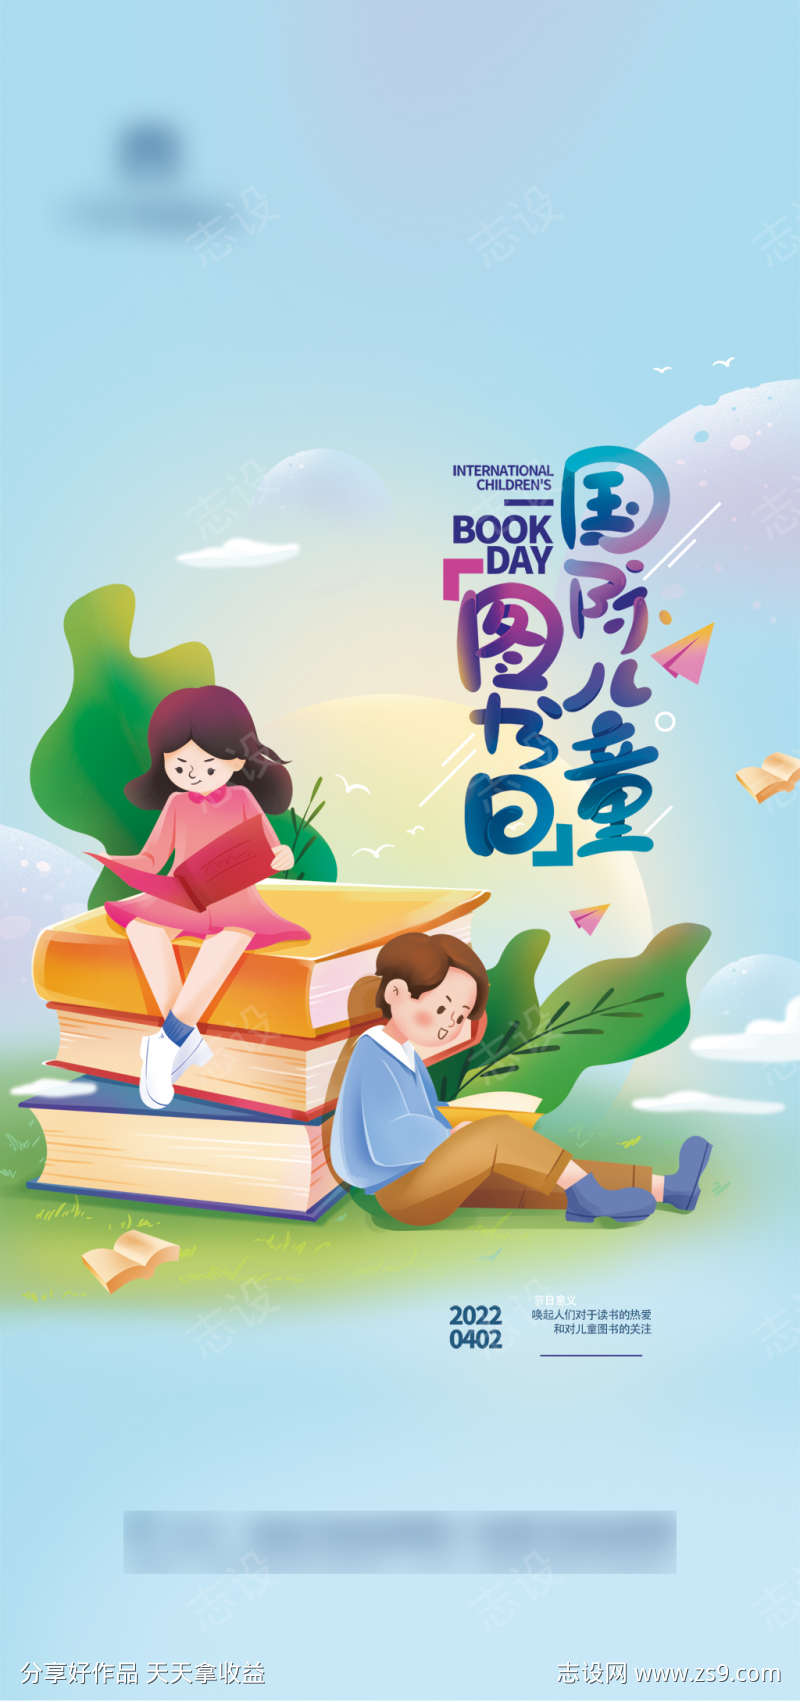 清爽国际儿童图书节海报